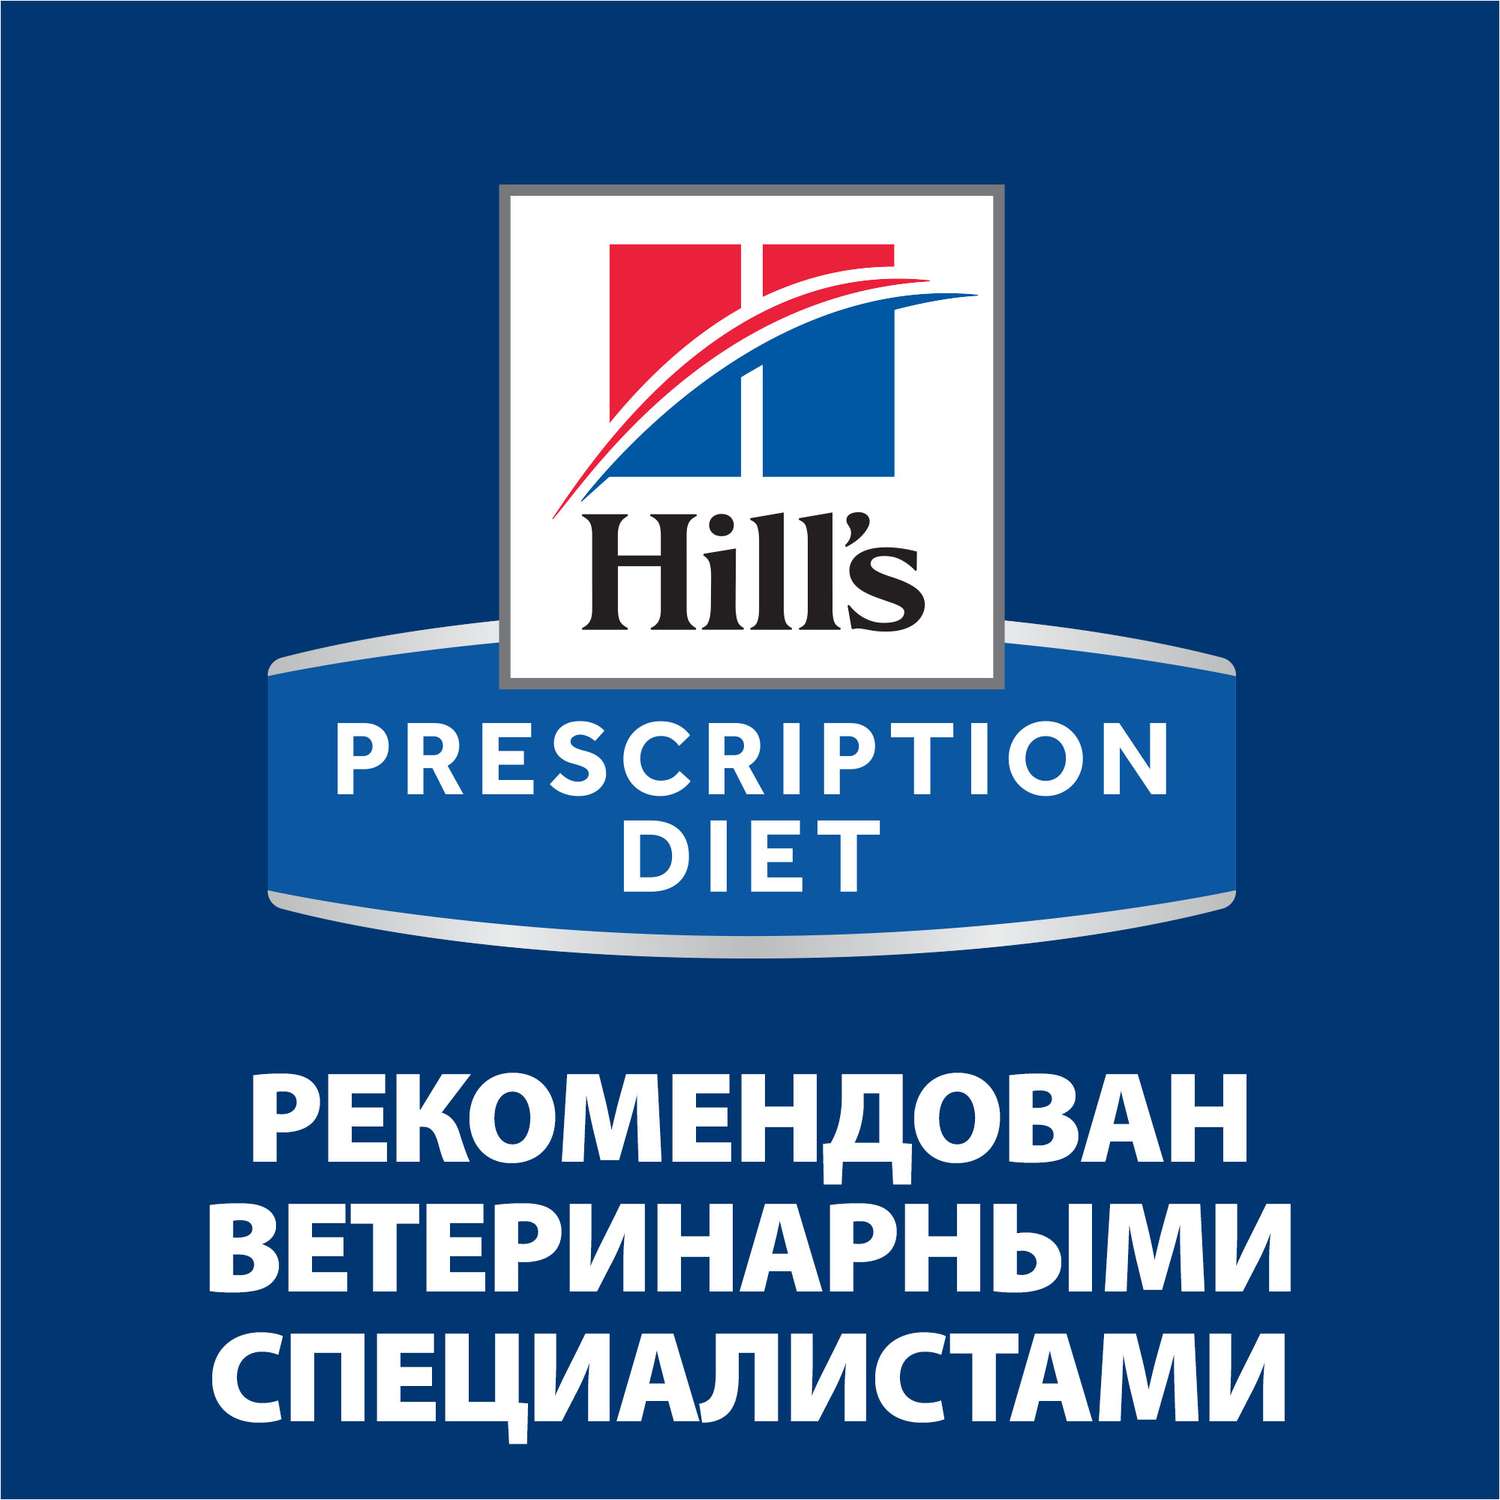 Корм для собак Hills 360г Prescription Diet i/d Low Fat диетический при расстройствах ЖКТ - фото 7